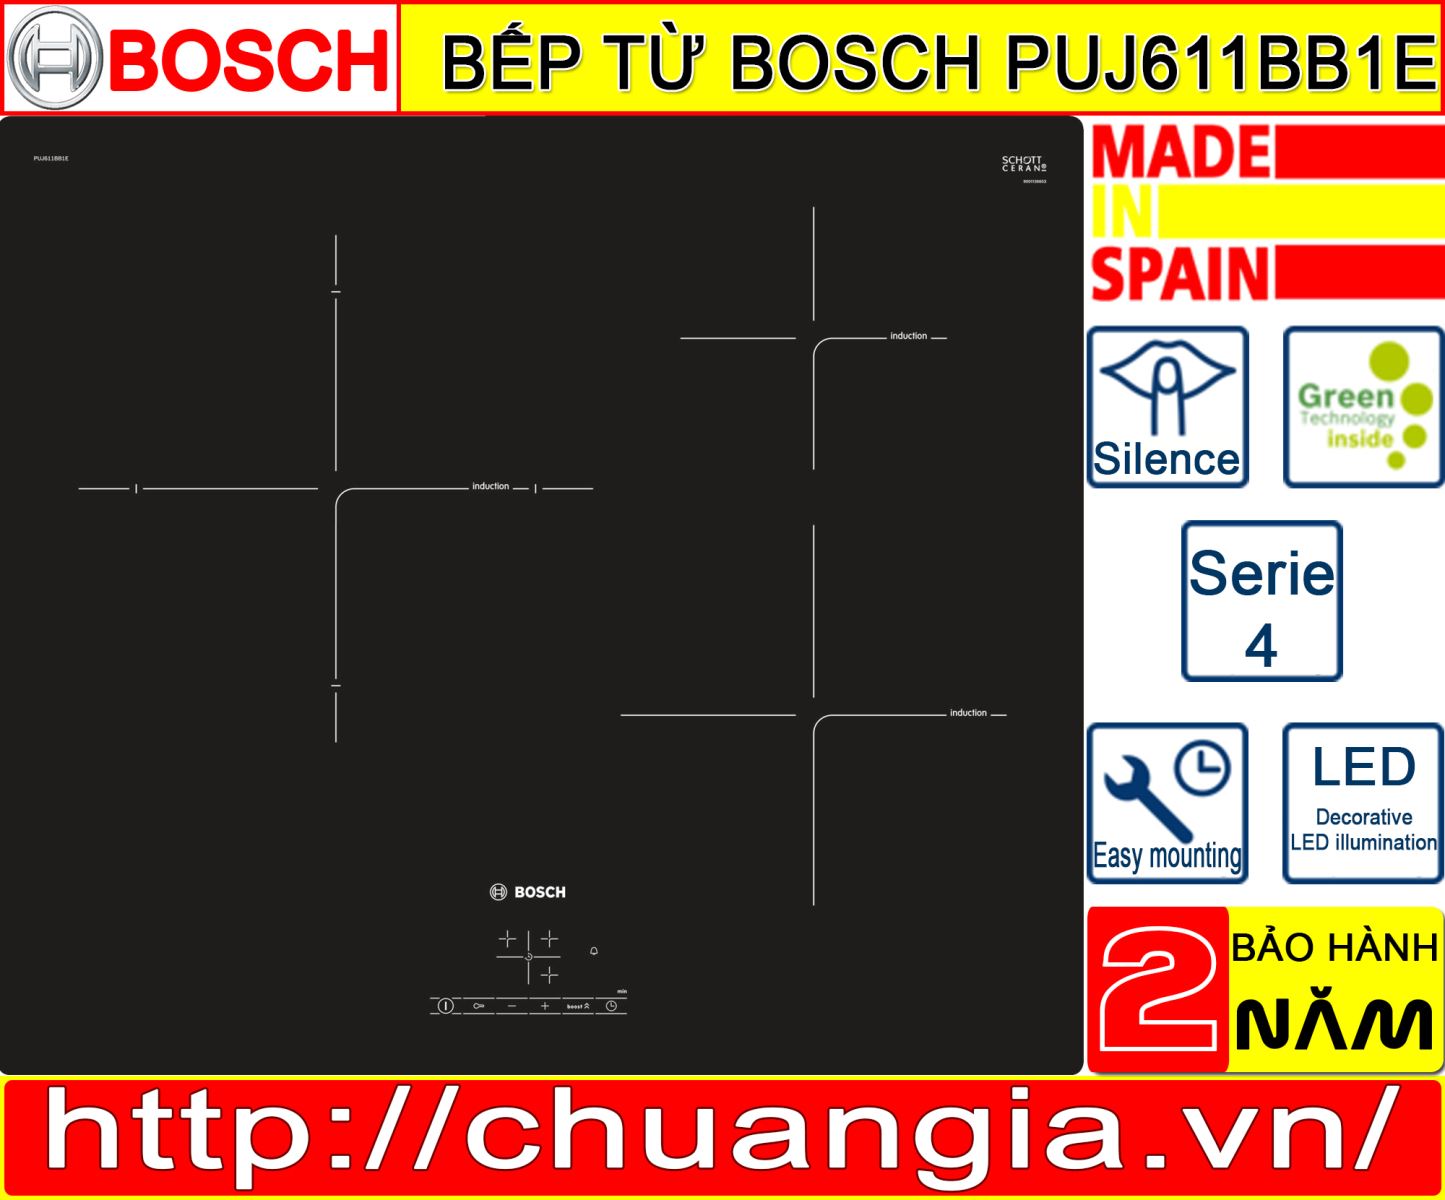 Bếp Từ Bosch PUJ611BB1E Serie 4, bếp từ bosch puj631bb2e, bep tu bosch puj611bb1e, bếp từ bosch puc631bb2e, bếp bosch, bếp từ puj611bb1e, bếp từ bosch thái sơn, bếp từ hồng ngoại bosch, bếp từ bosch 2 vùng nấu